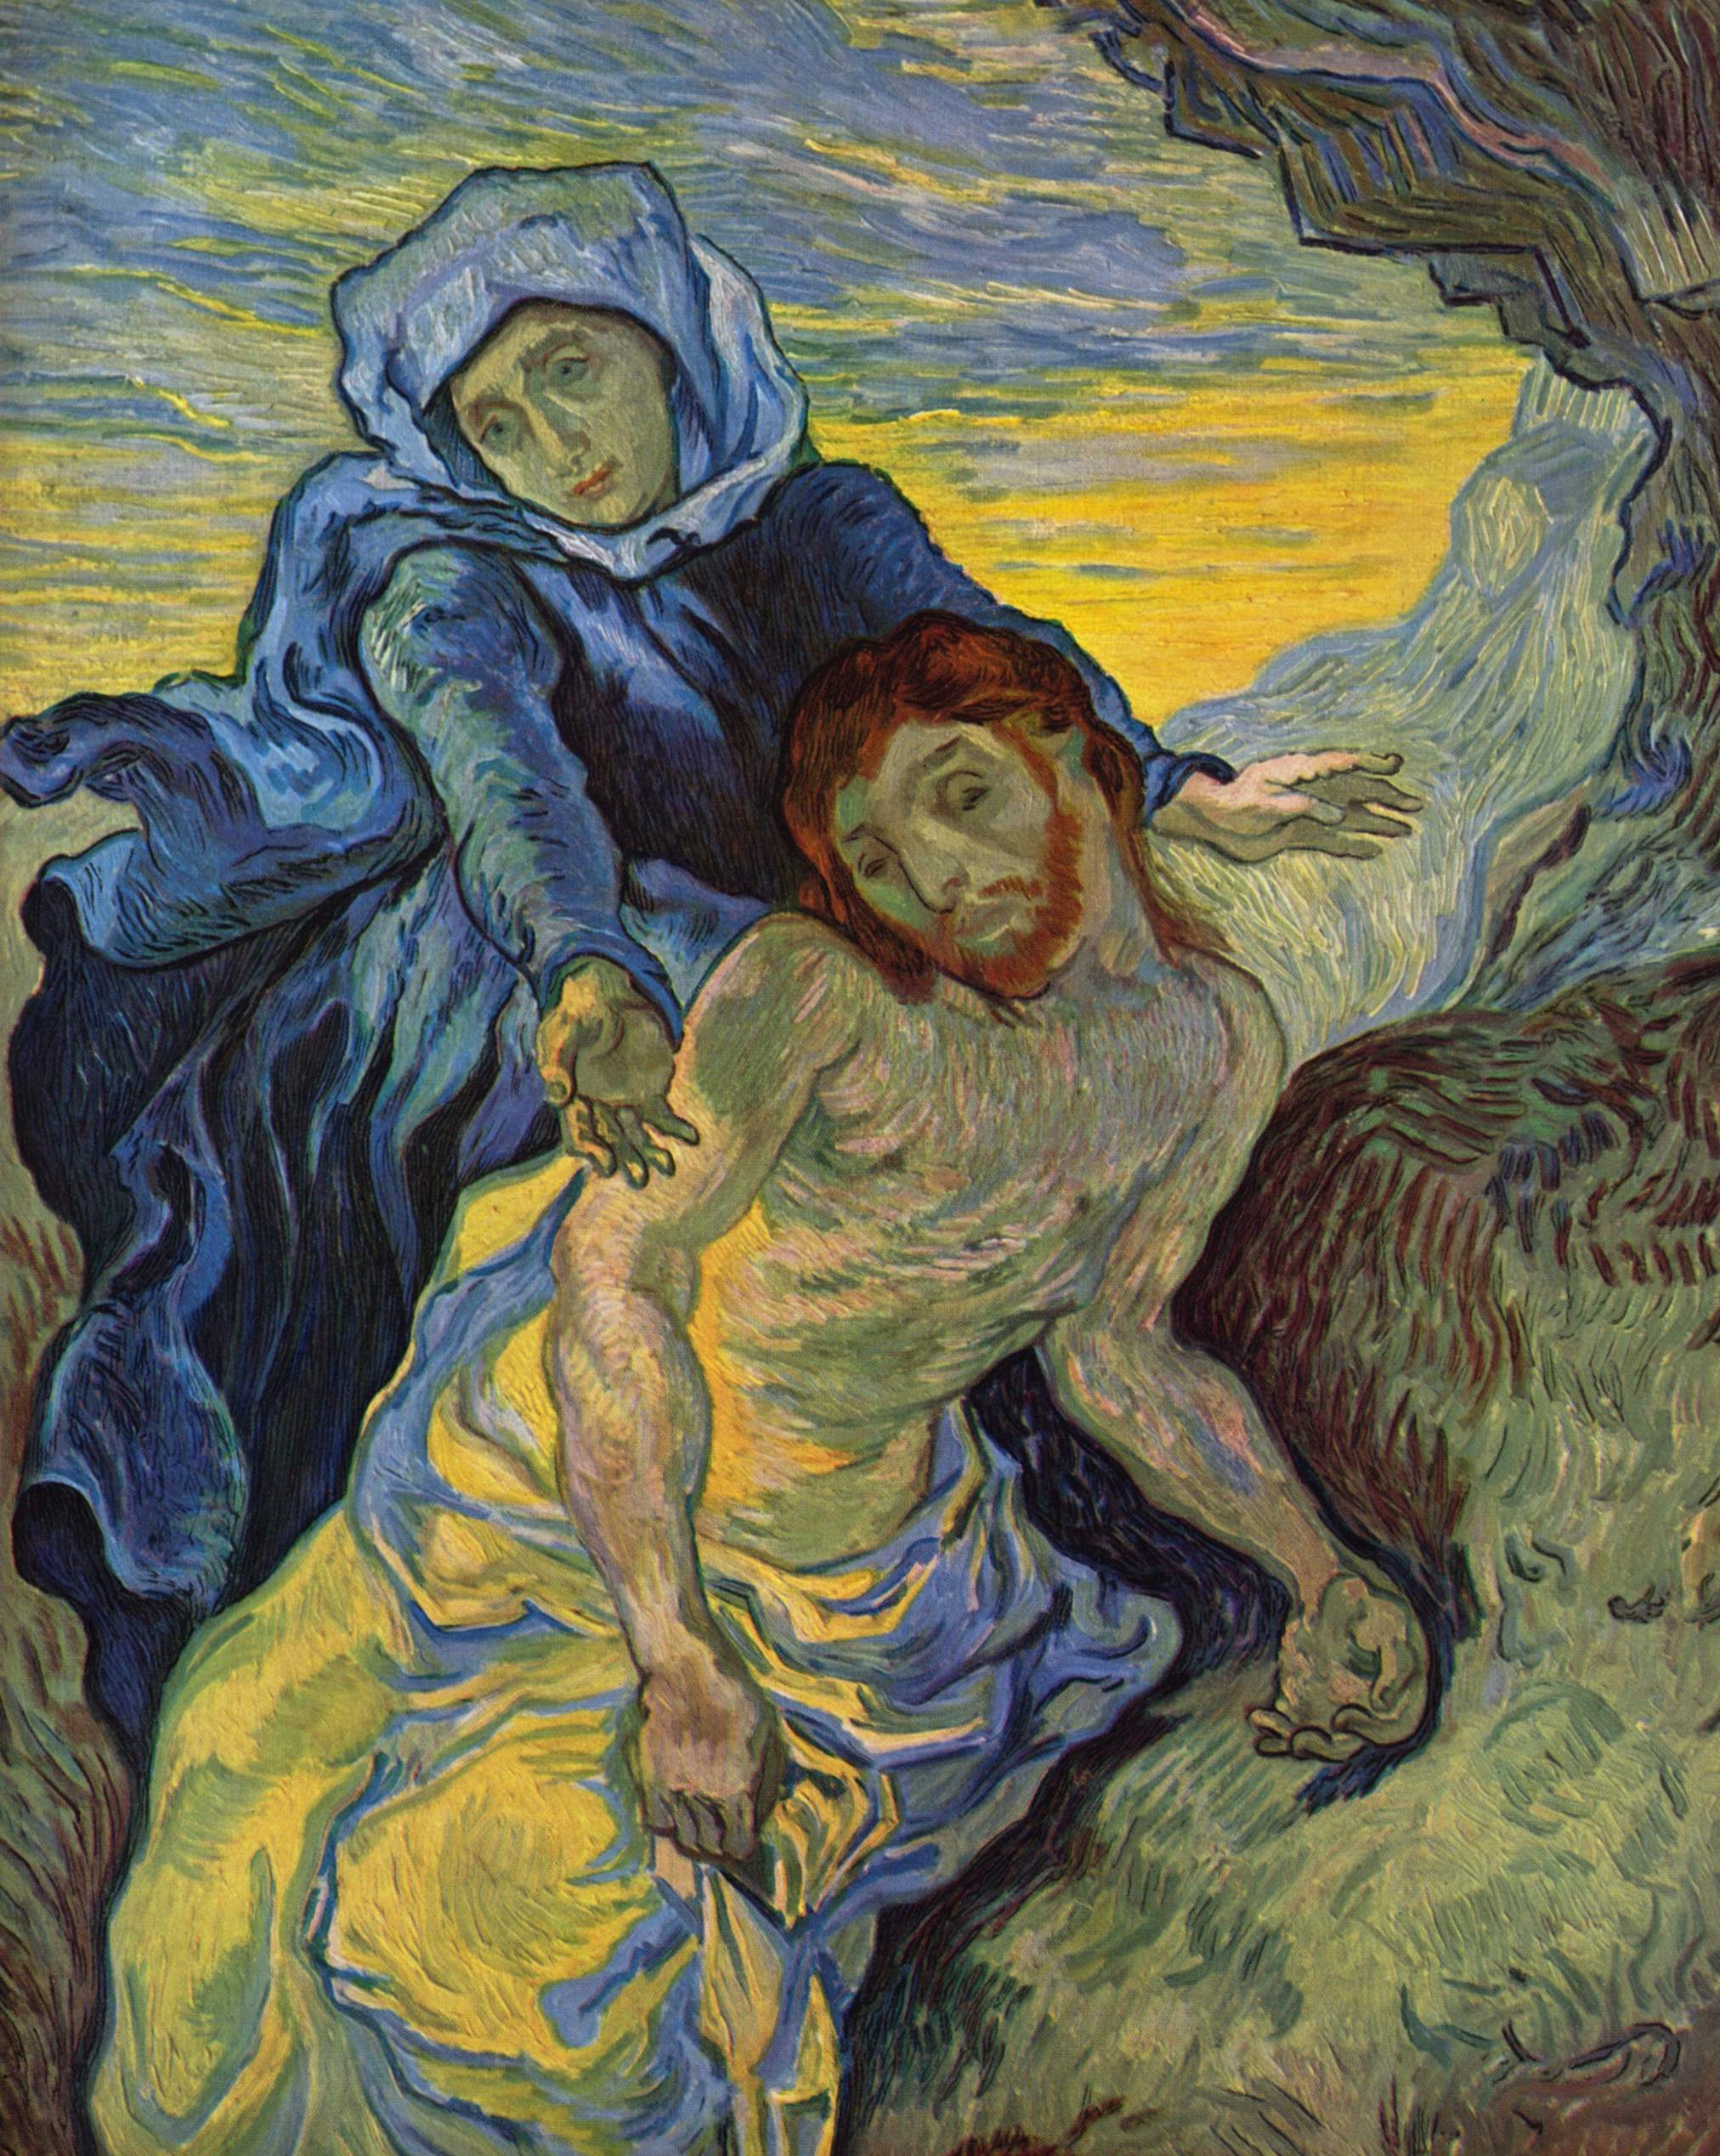 Pieta nach Delacroix by Vincent van Gogh - 1889 - 73 × 60 cm Van Gogh Museum